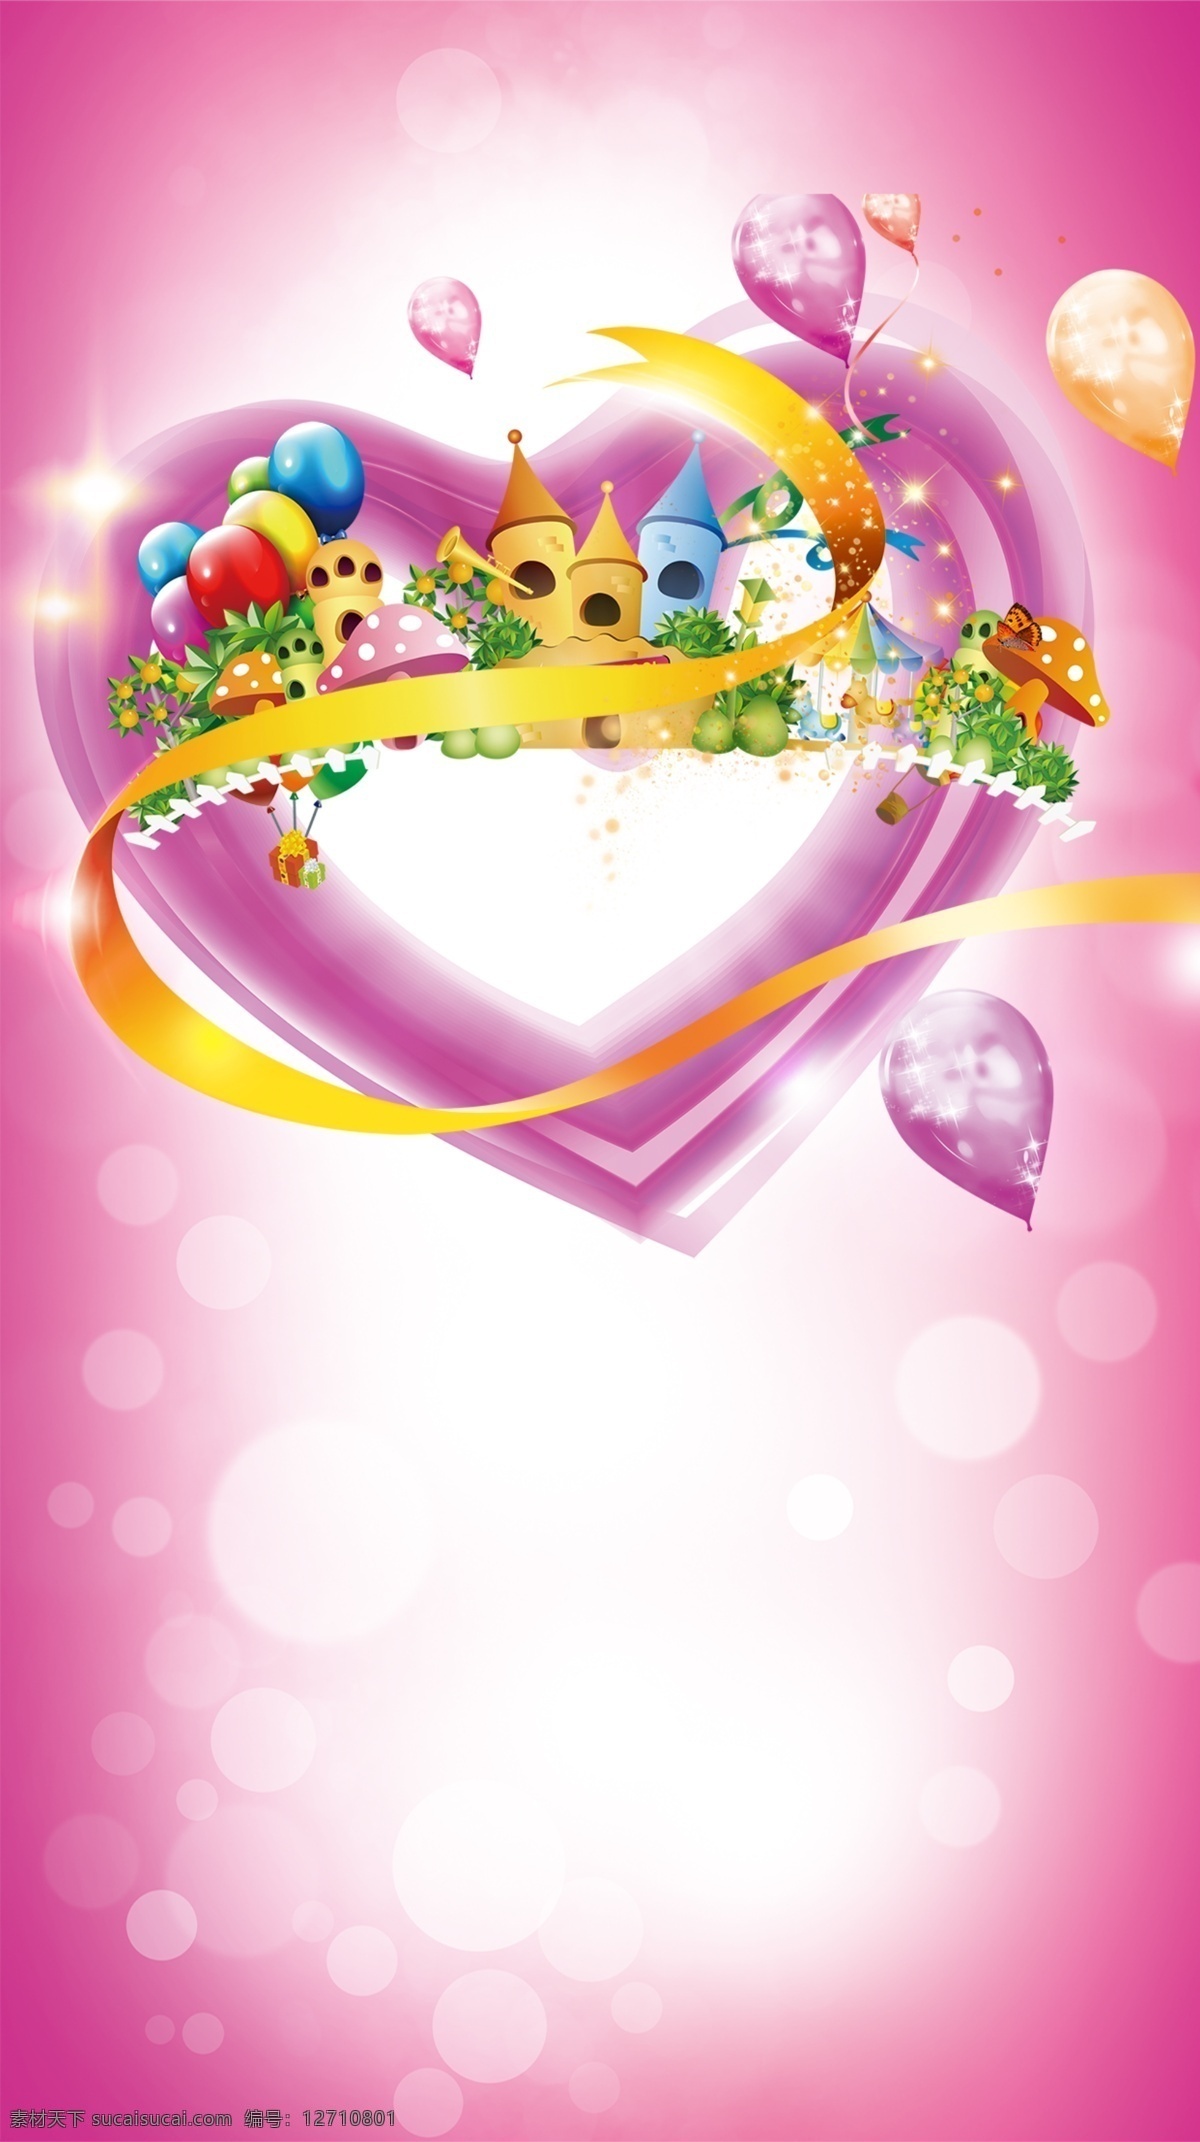 儿童乐园 生日贺卡 粉色 梦幻 h5 海报 背景 光斑 黄丝带 红心 城堡 气球 蘑菇 童趣 psd下载